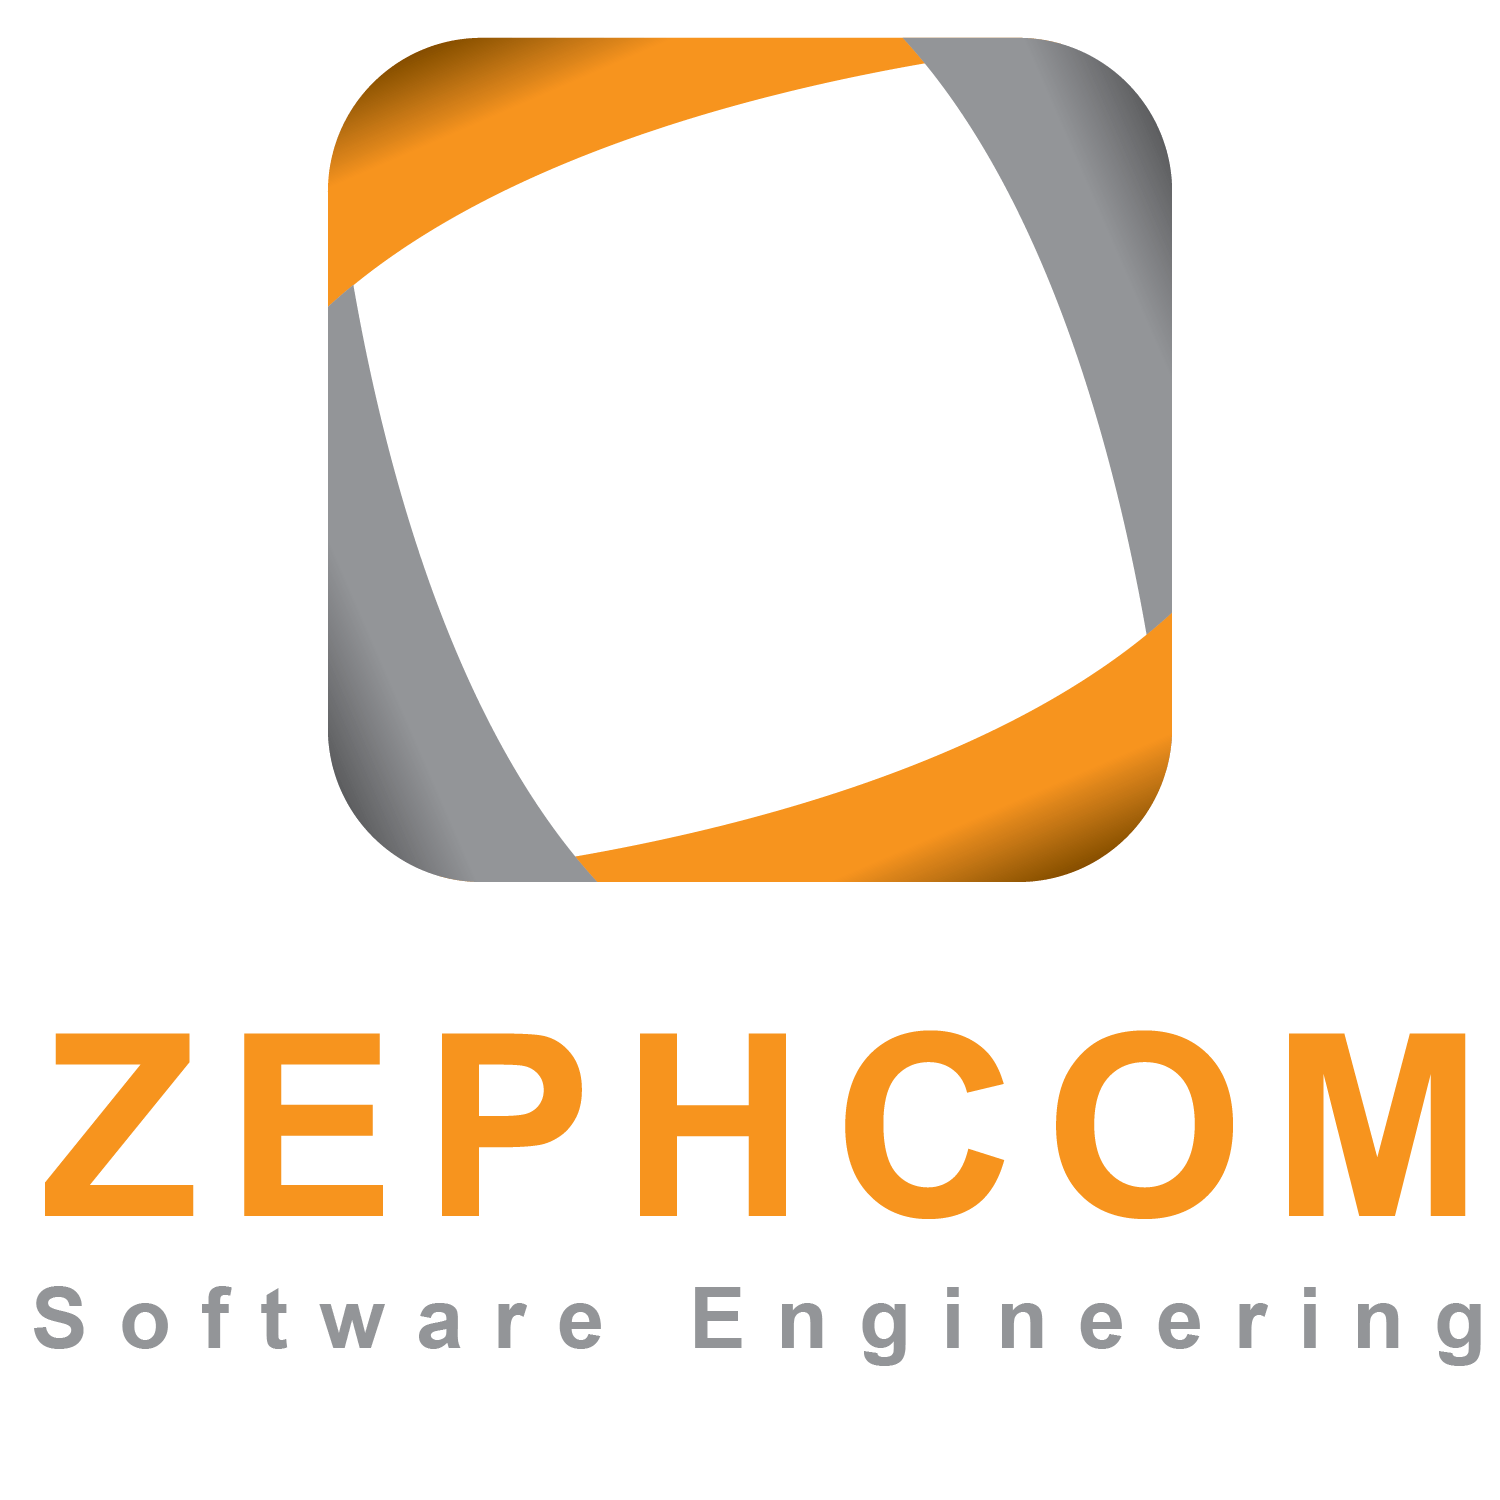 AMK Logo - Elegant, Playful, Information Technology Logo Design for Zephcom